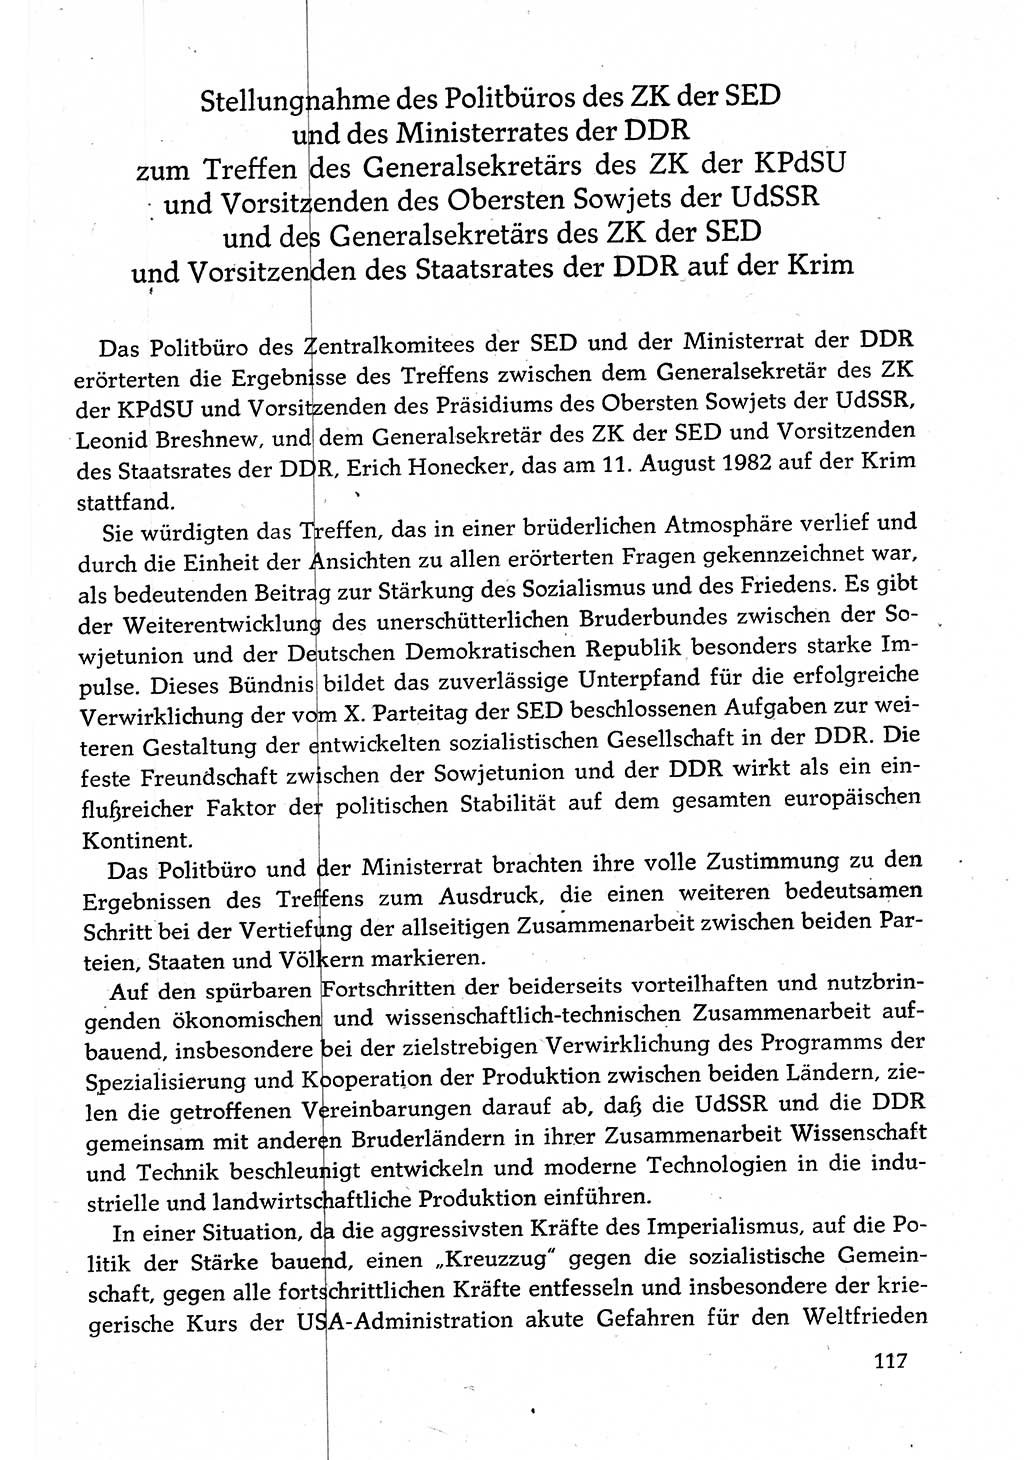 Dokumente der Sozialistischen Einheitspartei Deutschlands (SED) [Deutsche Demokratische Republik (DDR)] 1982-1983, Seite 117 (Dok. SED DDR 1982-1983, S. 117)